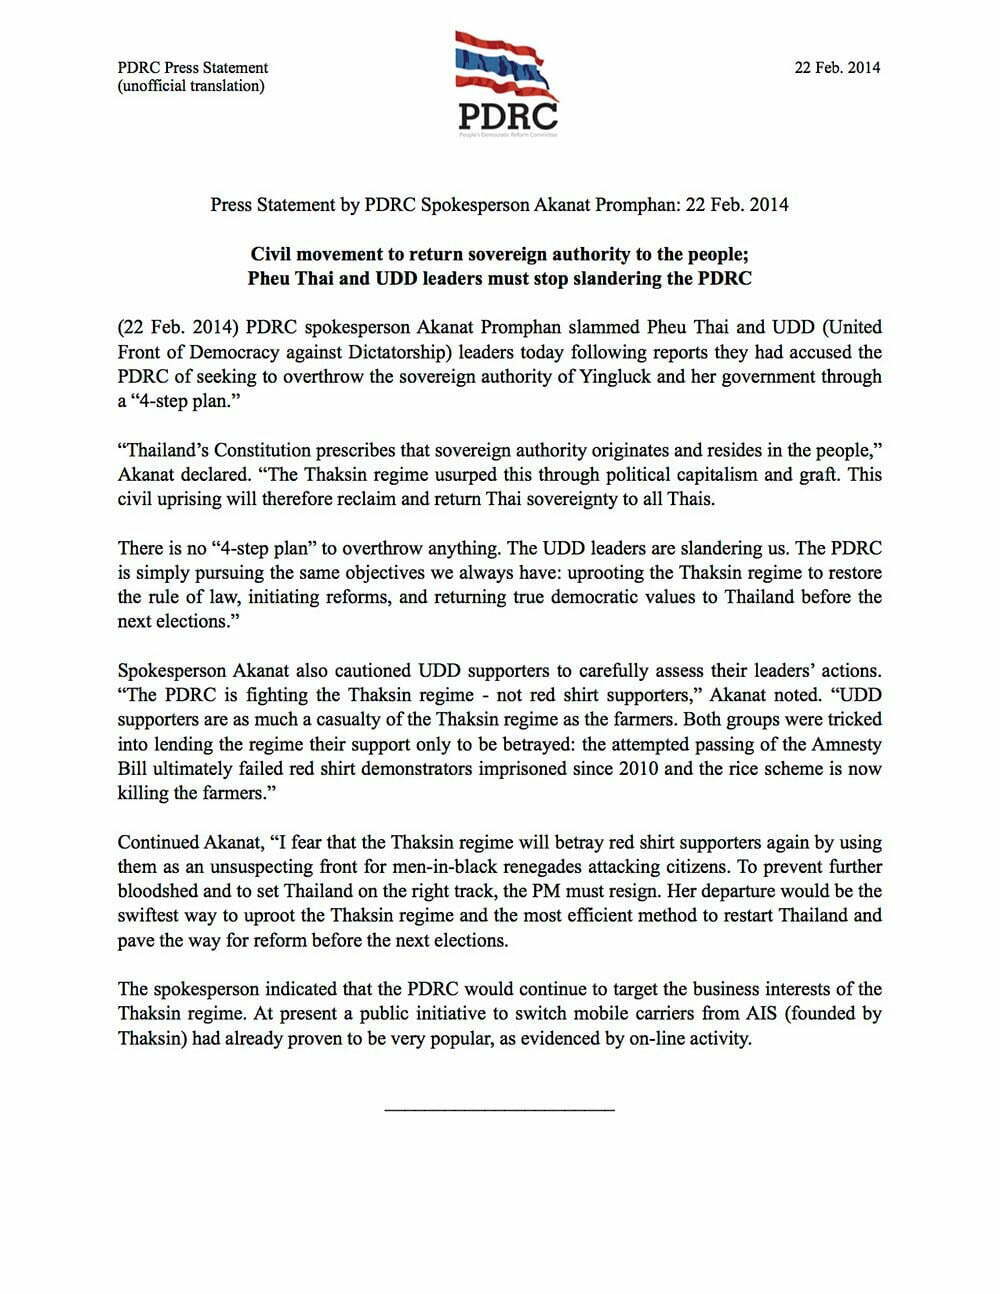 pdrc-press-statement akanat 22-feb-2014